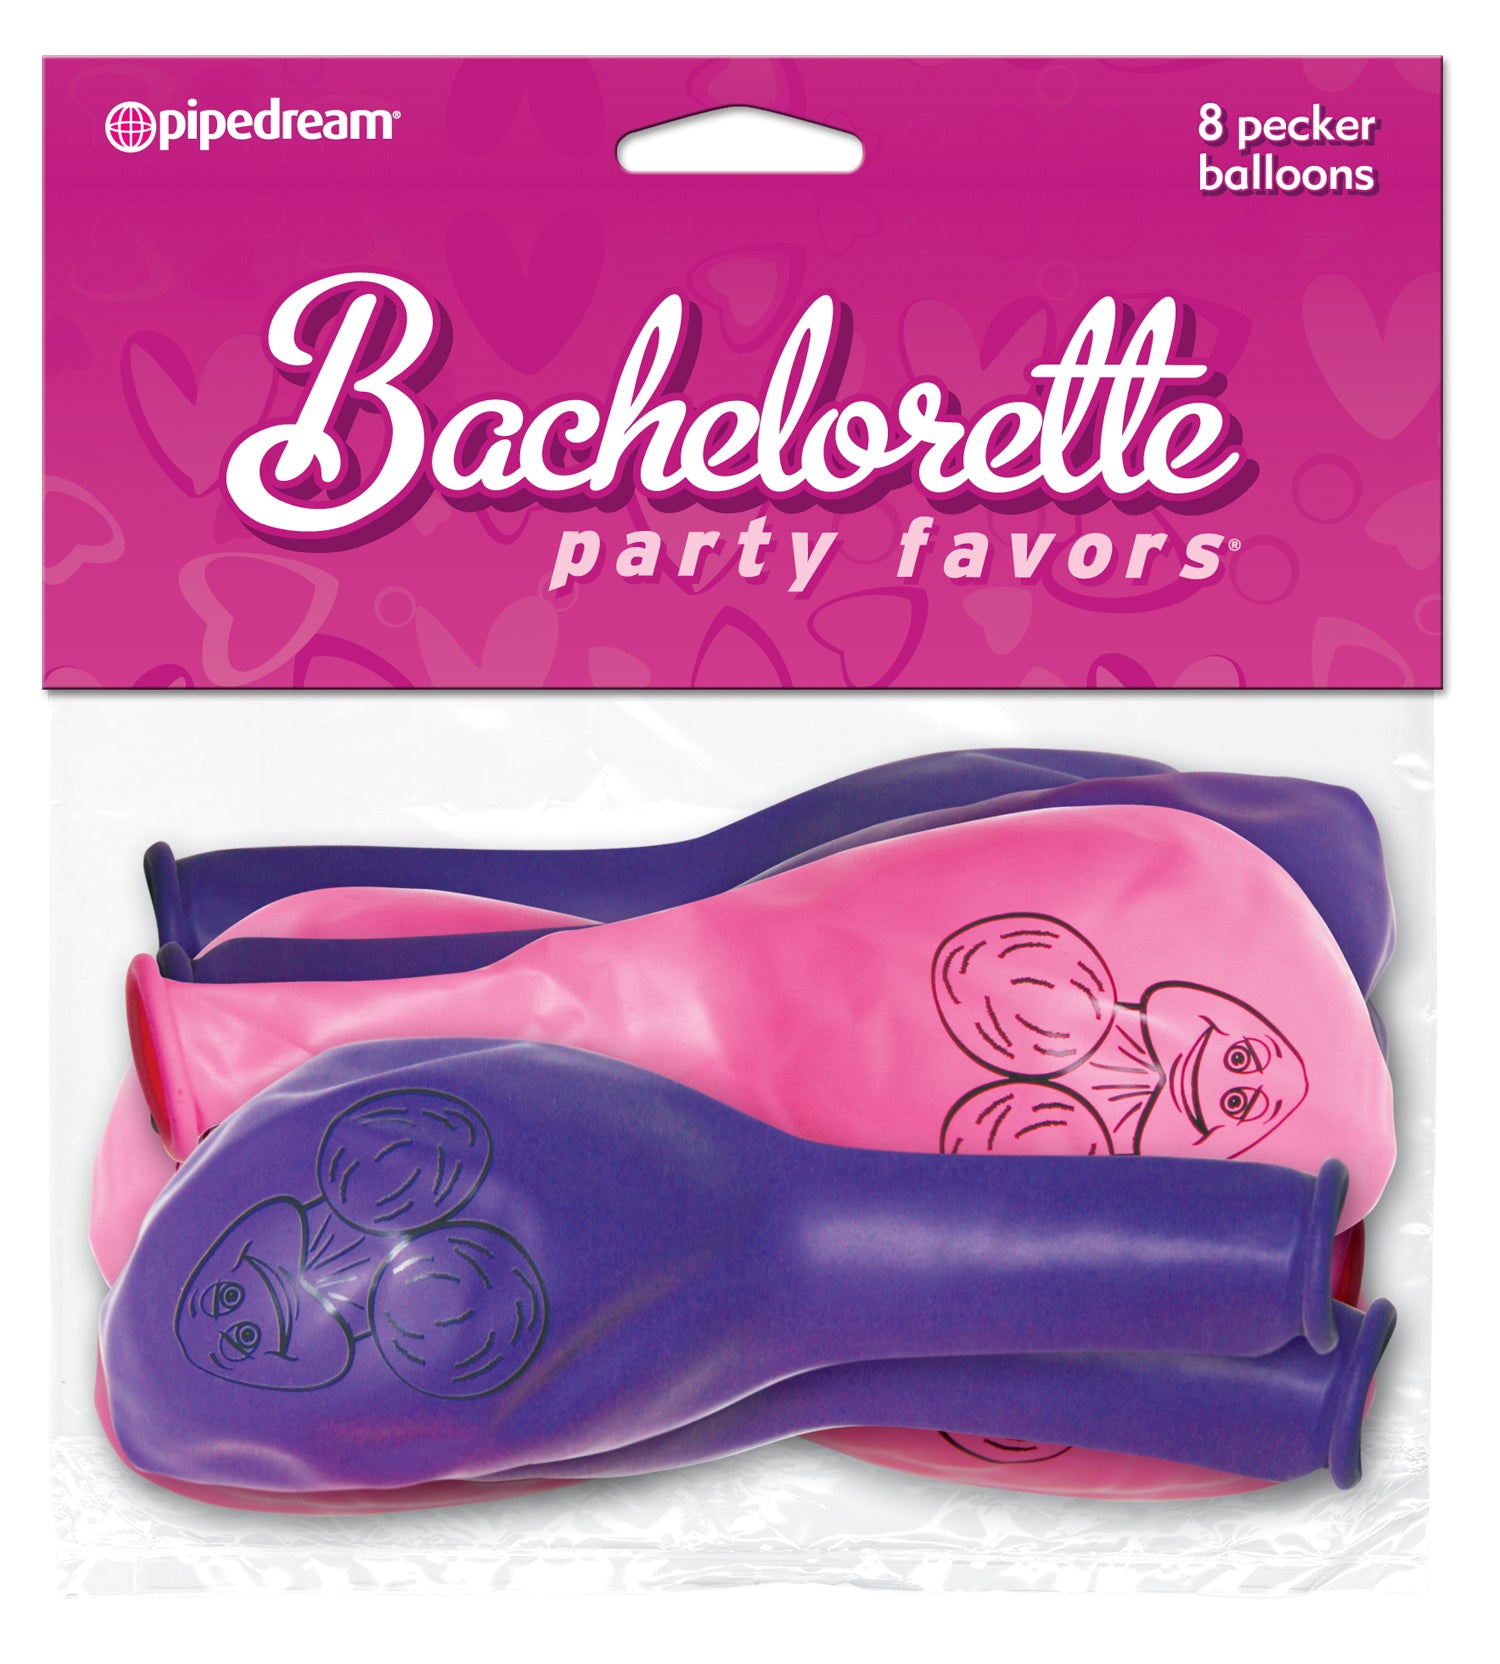 Bachelorette Party Favors - Pecker Cake Pan